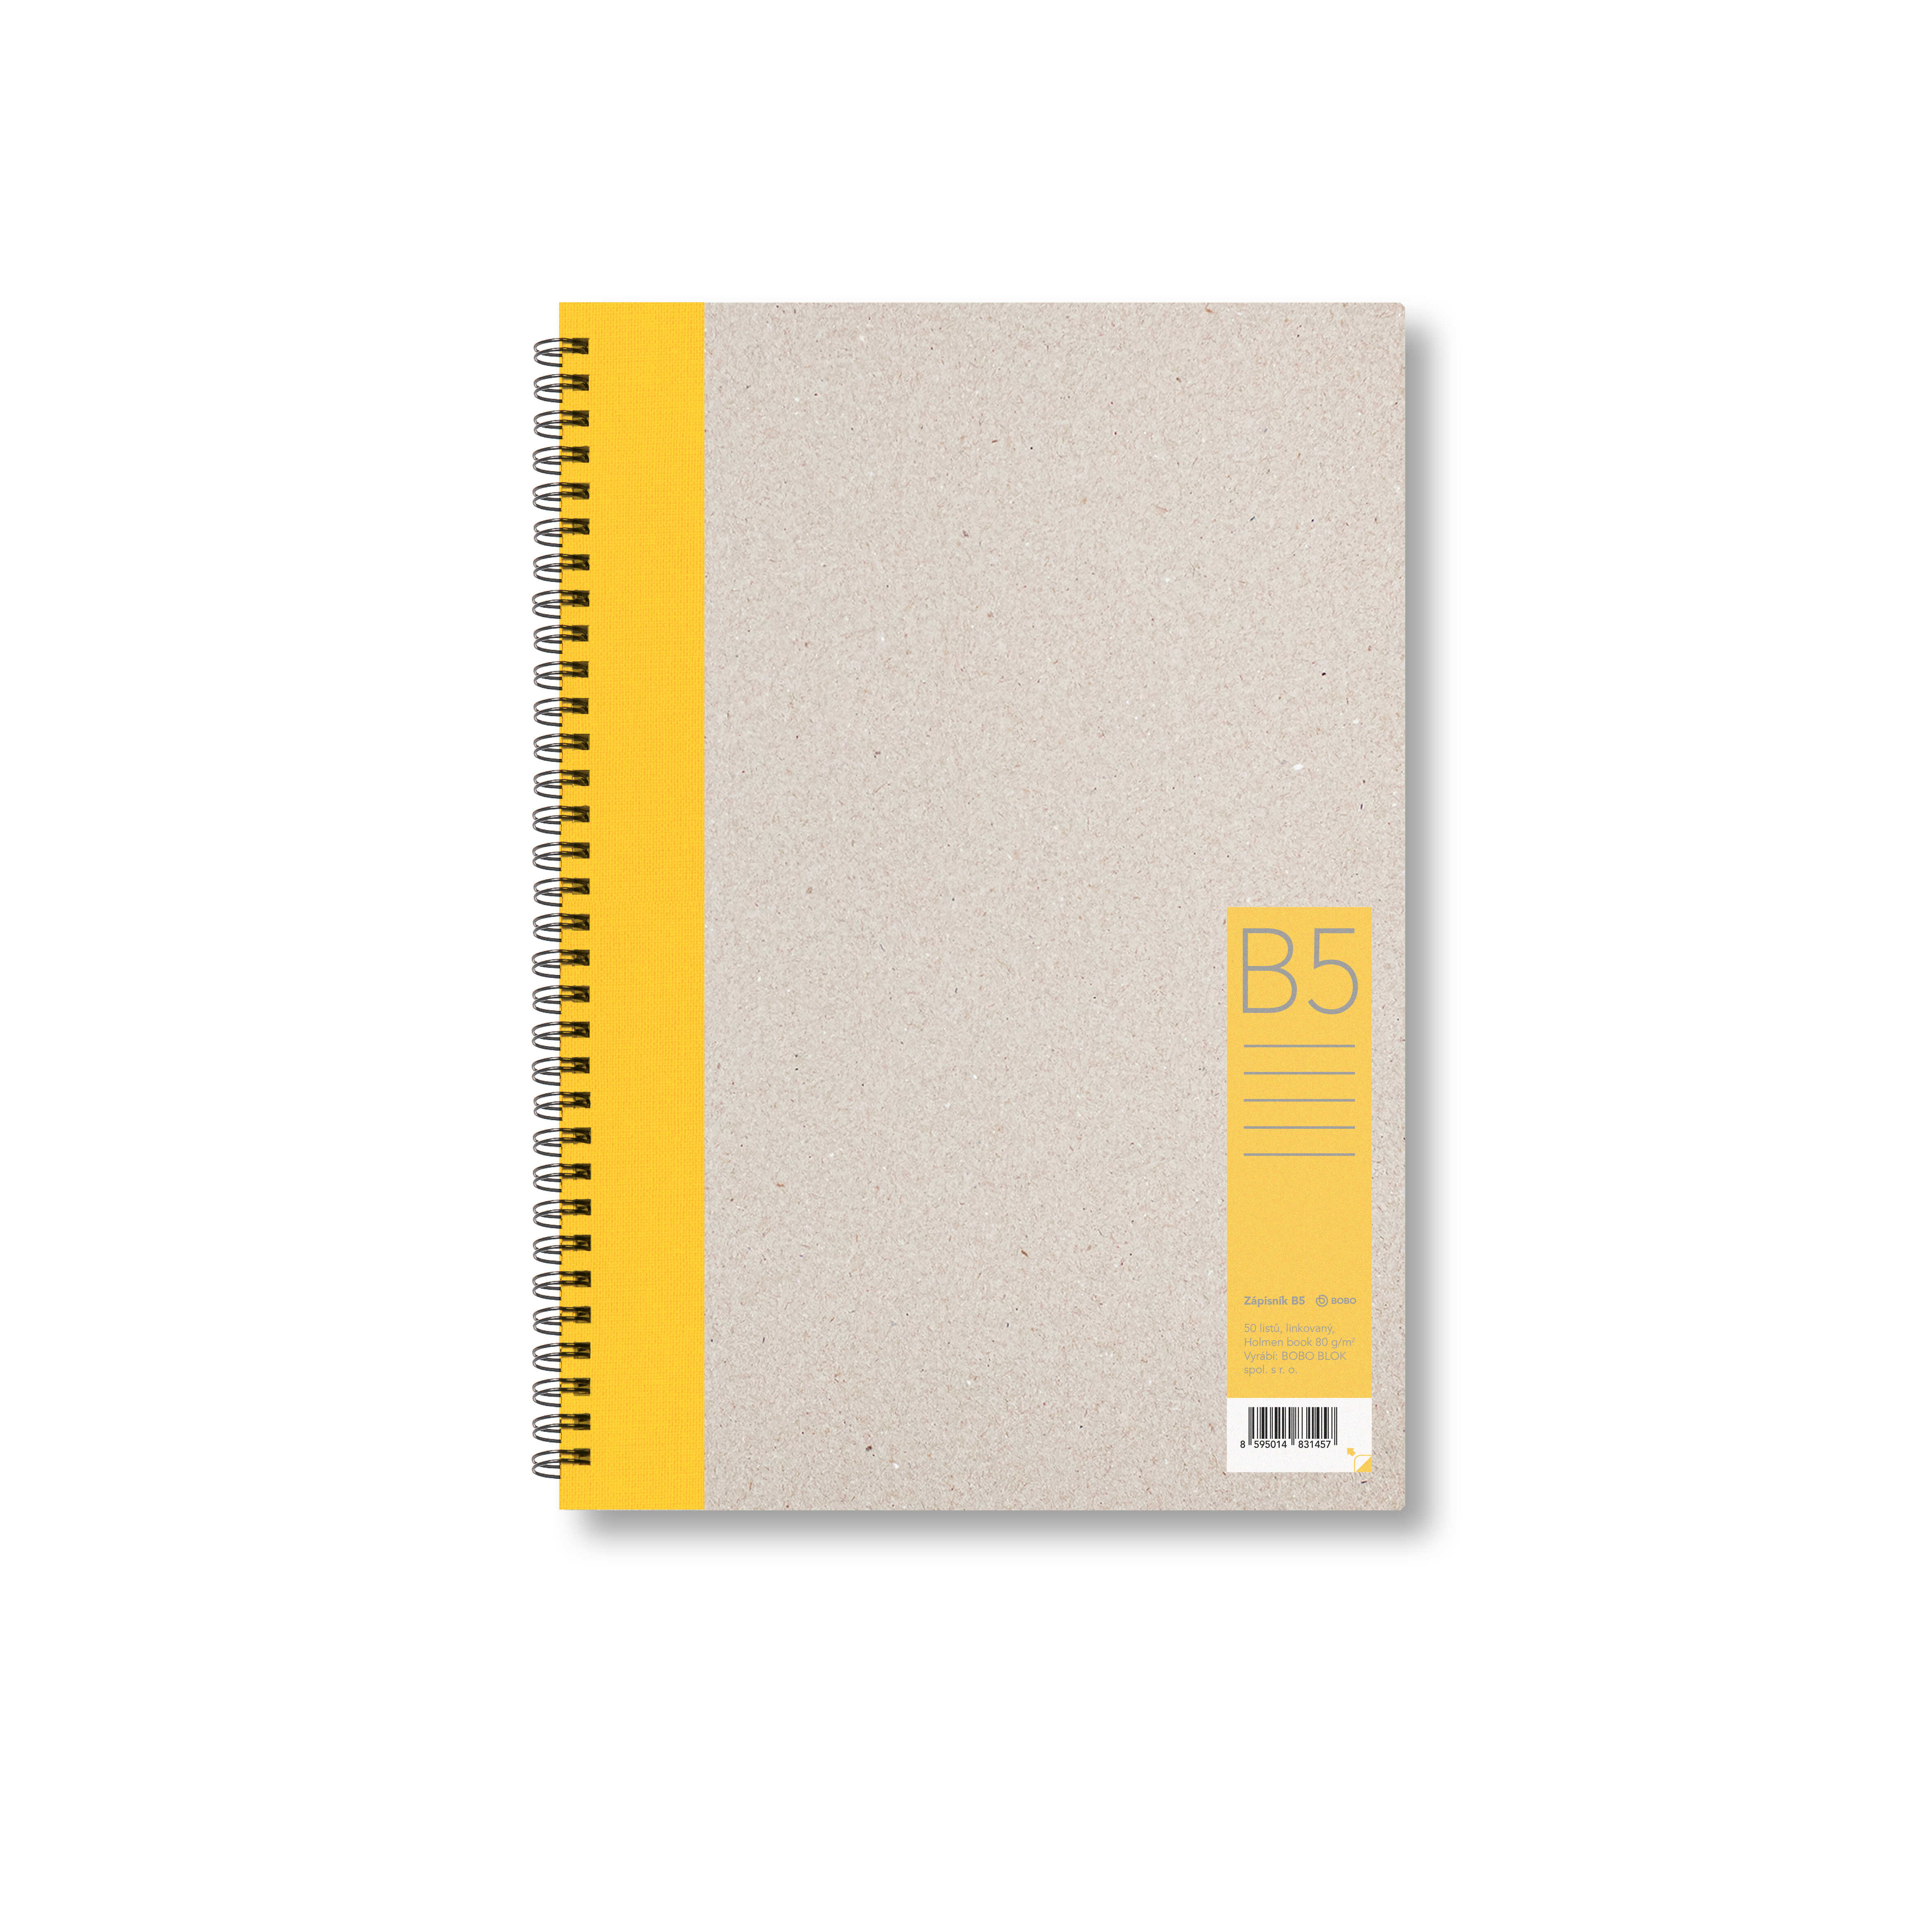 BOBO Zápisník, B5, linkovaný, žlutý